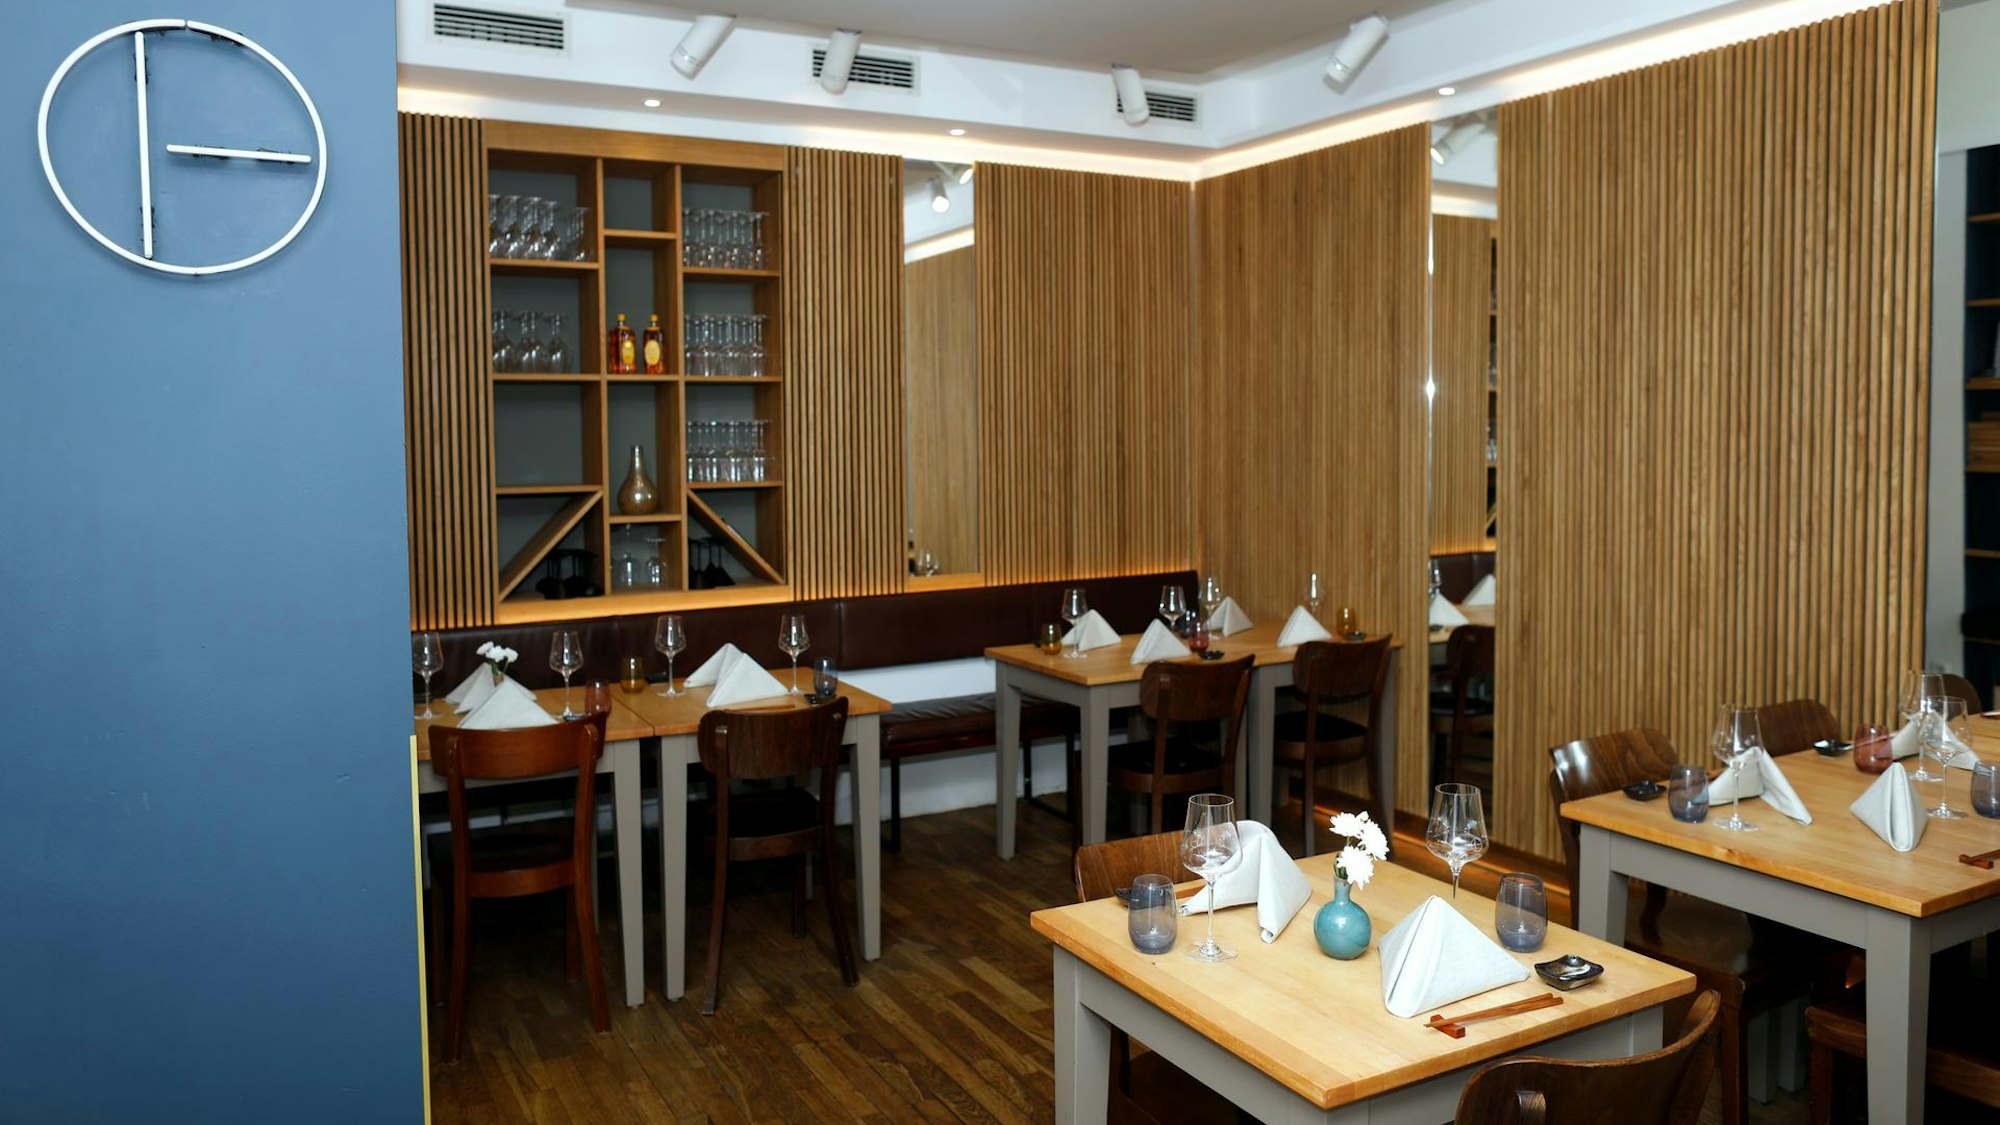 Die Räumlichkeiten des Restaurants Ito, zu sehen sind gedeckte Tische, der Stil ist schlicht und modern.